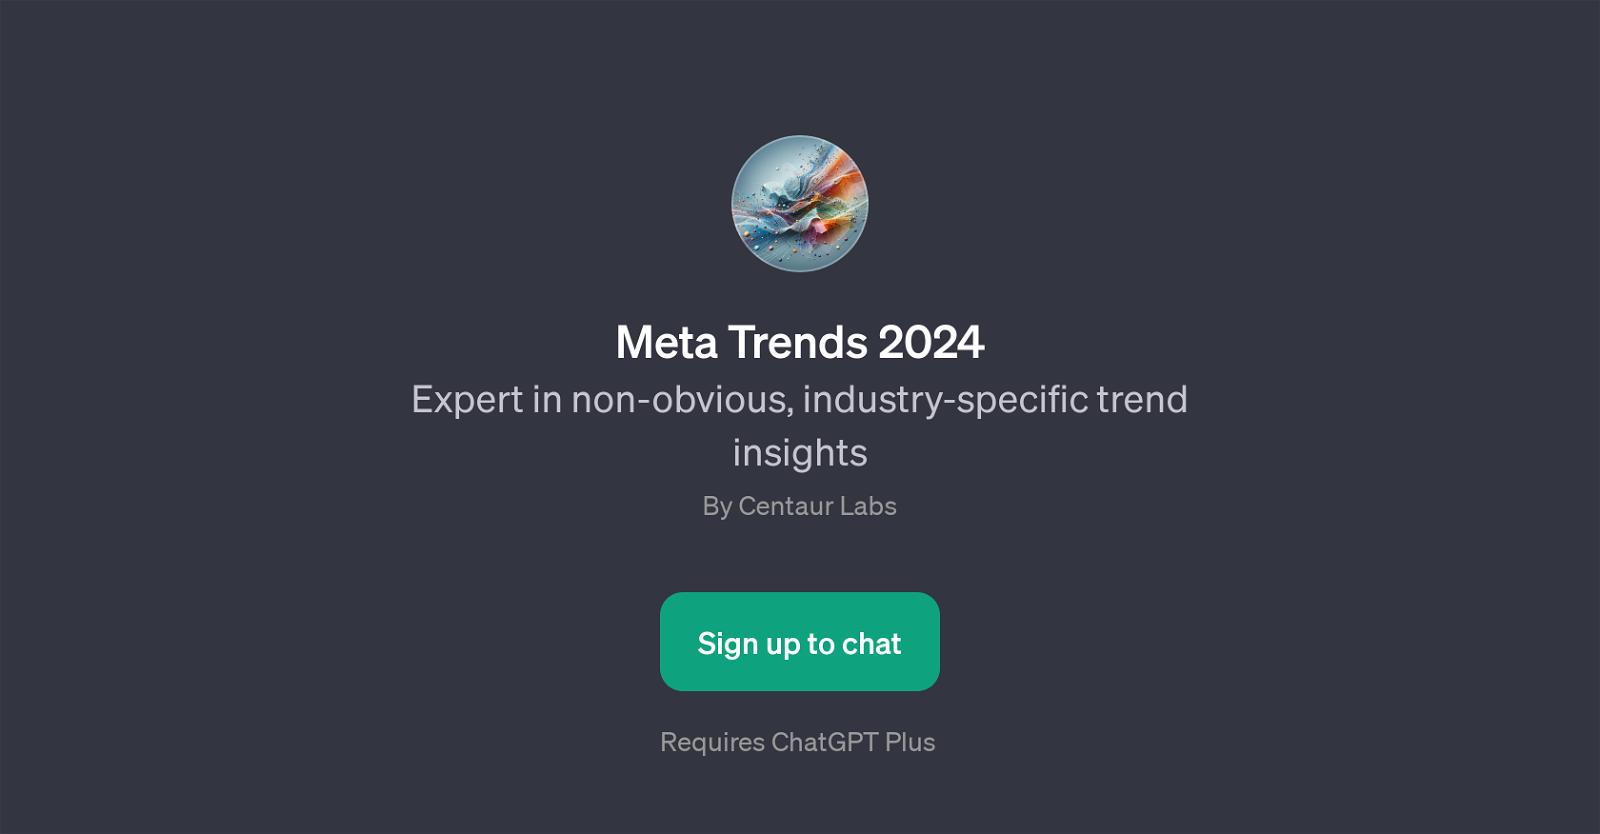 Meta Trends 2024 website